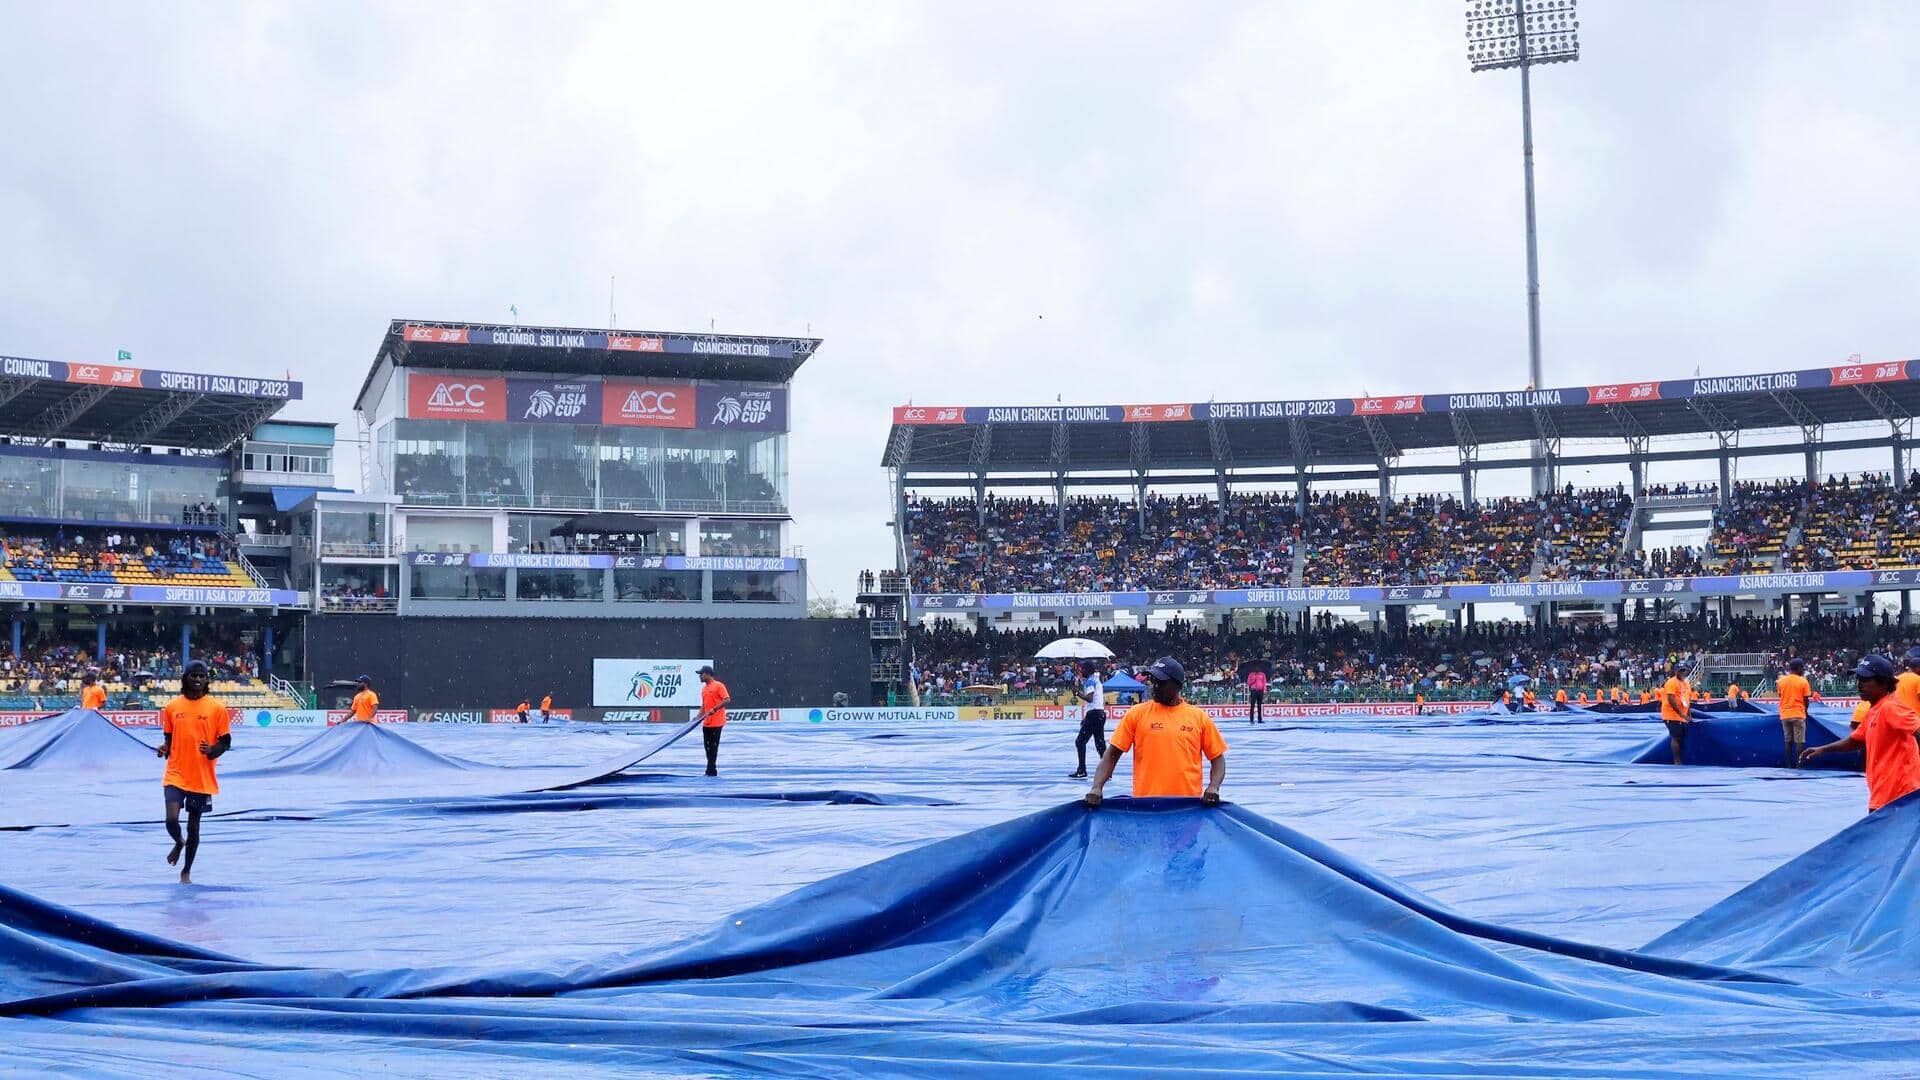 भारत बनाम श्रीलंका: रिजर्व डे पर भी नहीं निकला नतीजा तो कौन सी टीम होगी विजेता?